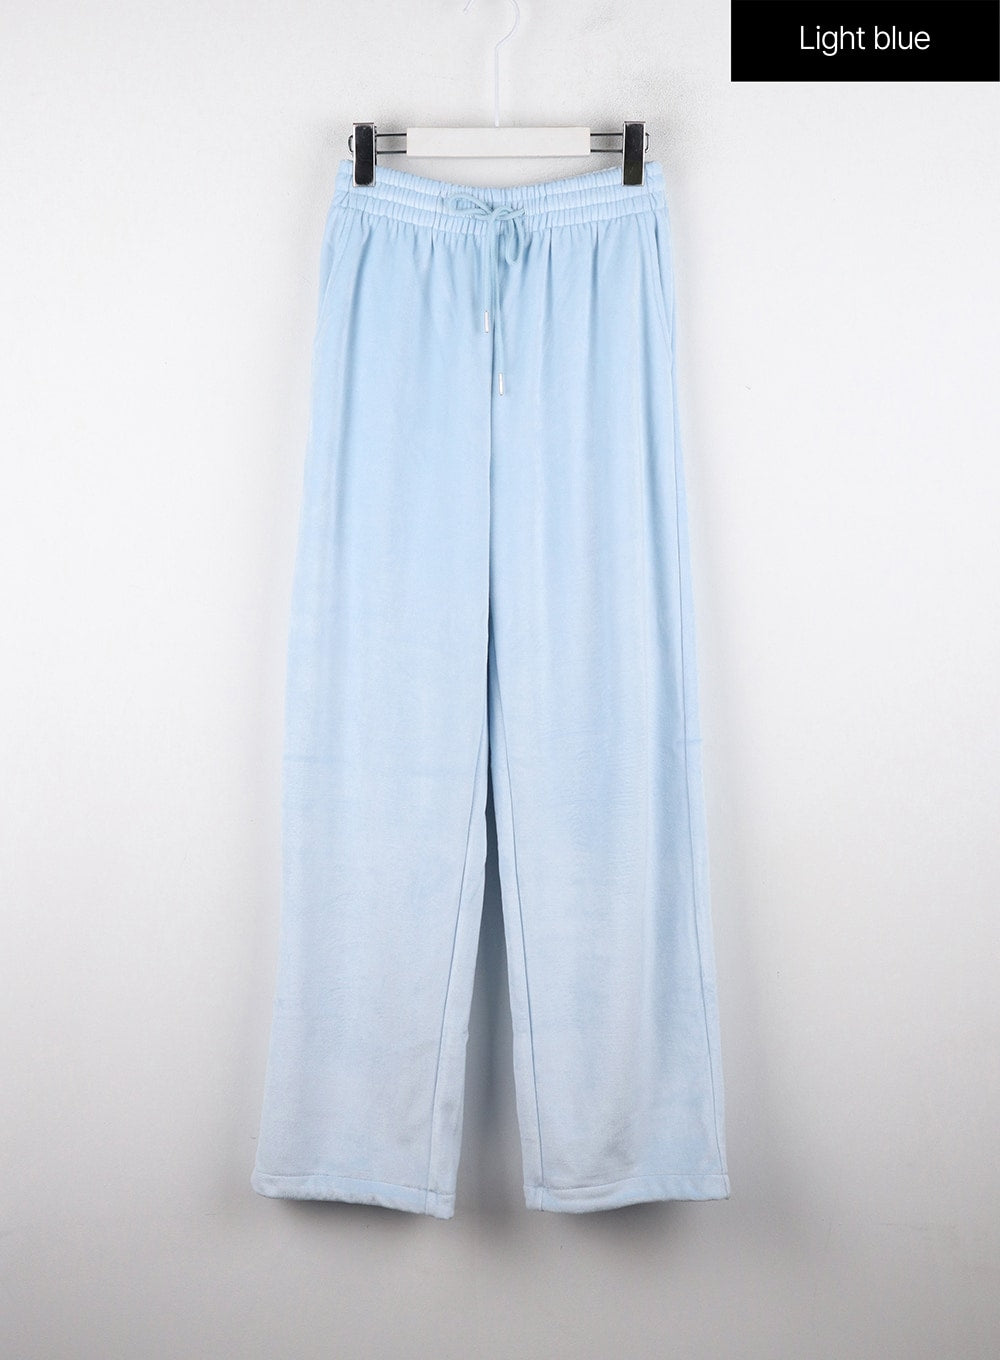 velvet-sweatpants-od318 / Light blue